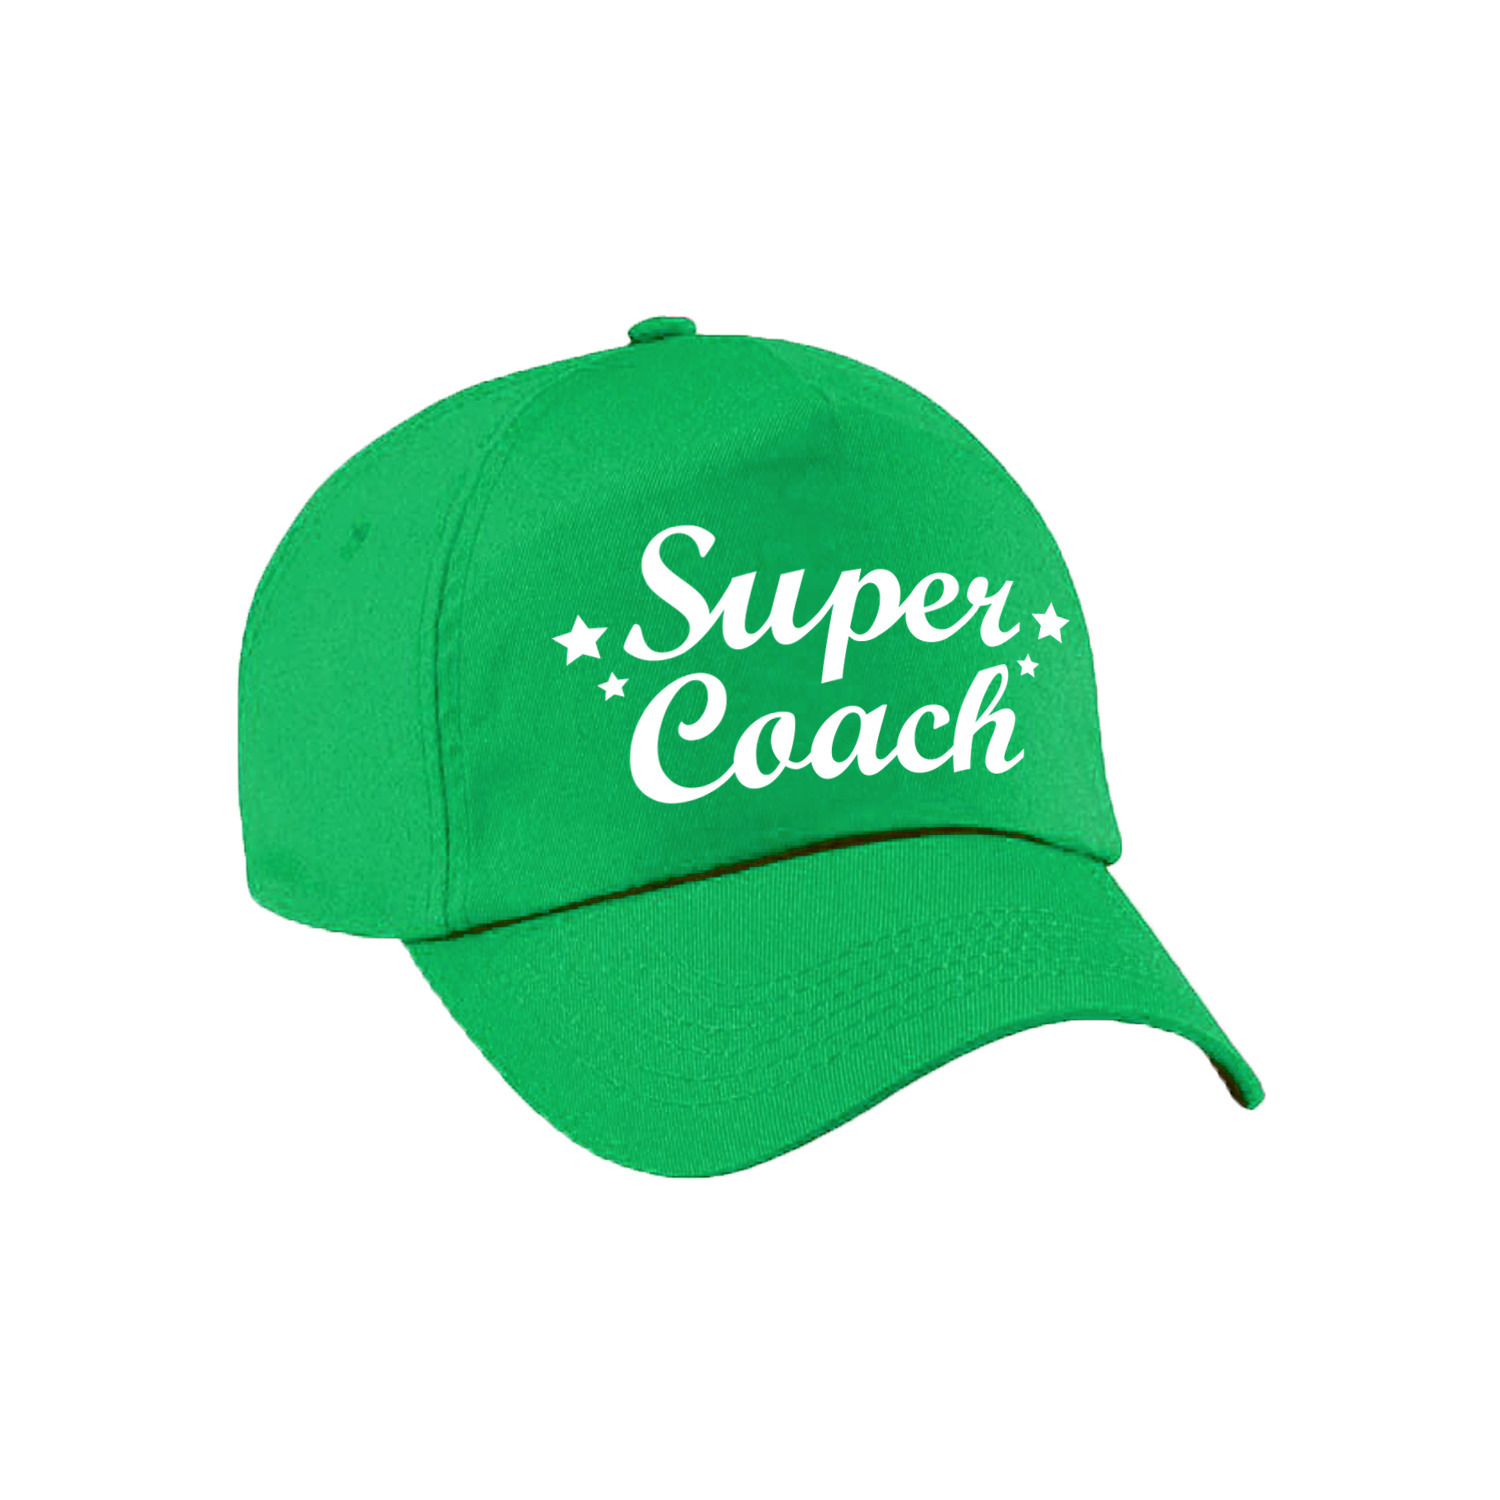 Super coach cadeau pet /cap groen voor volwassenen